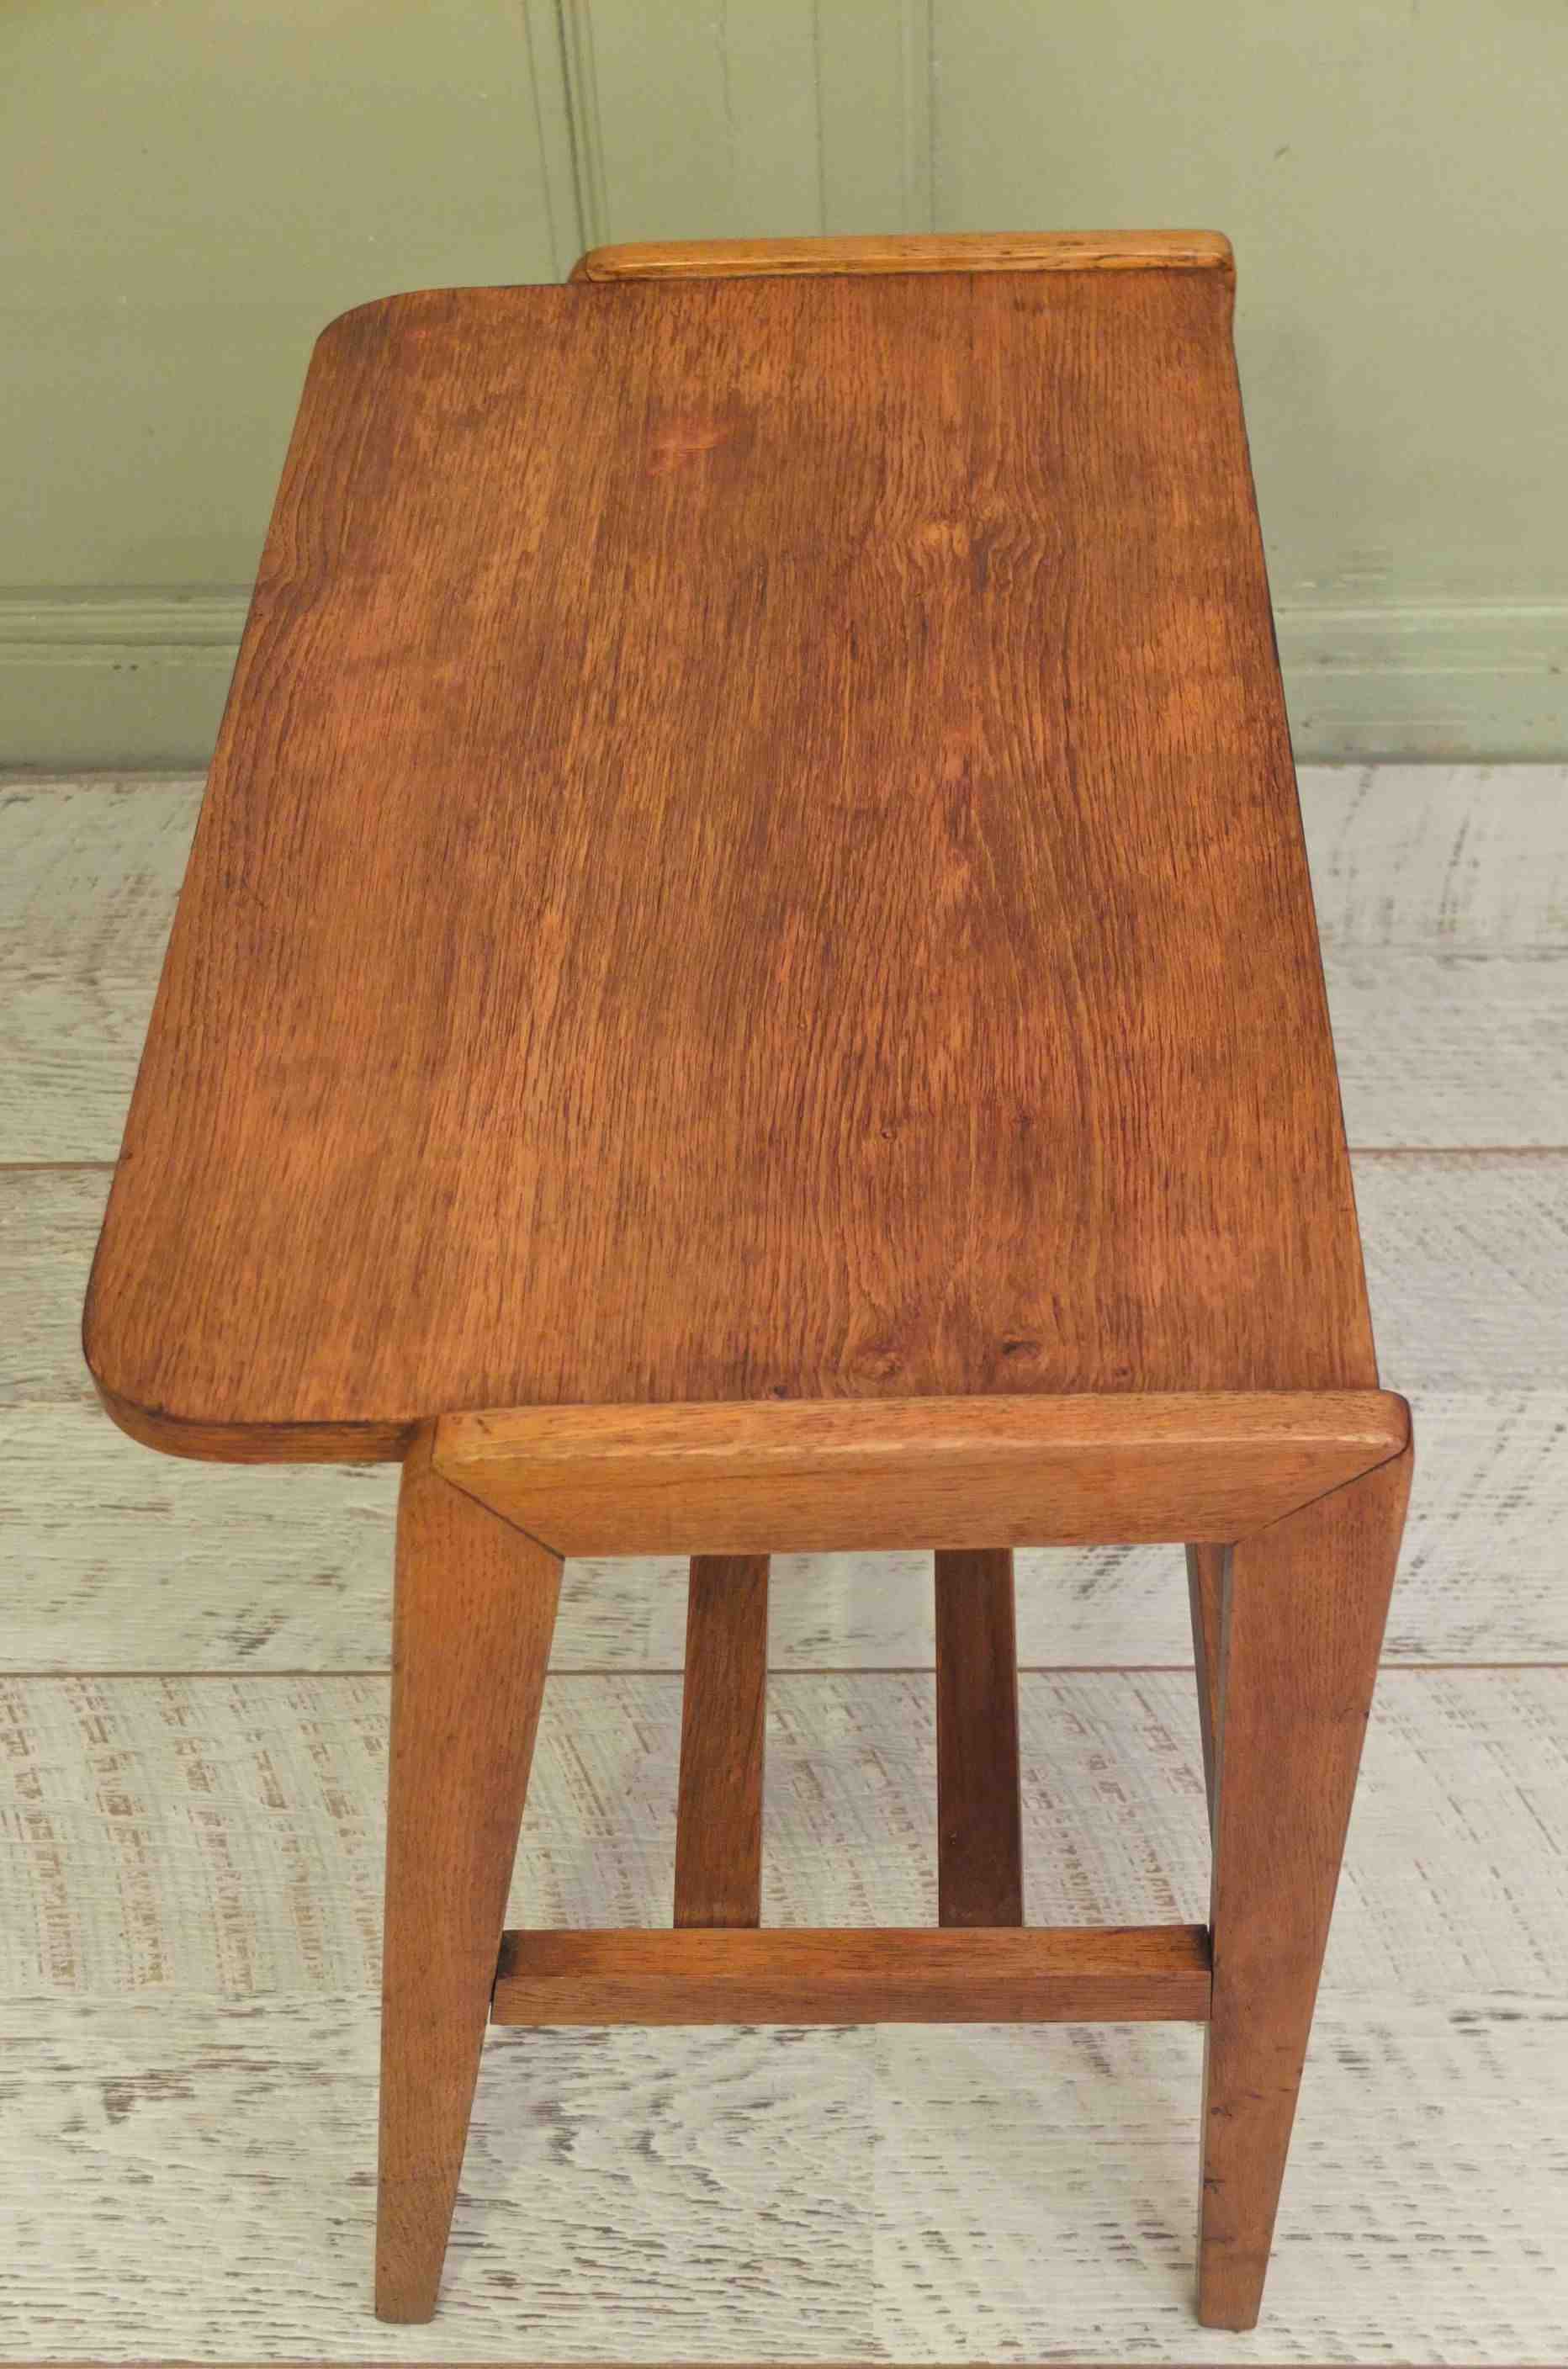 Slavia Vintage petite table en bois vintage pieds compas des années 60 modèle "Symetria" photo générale